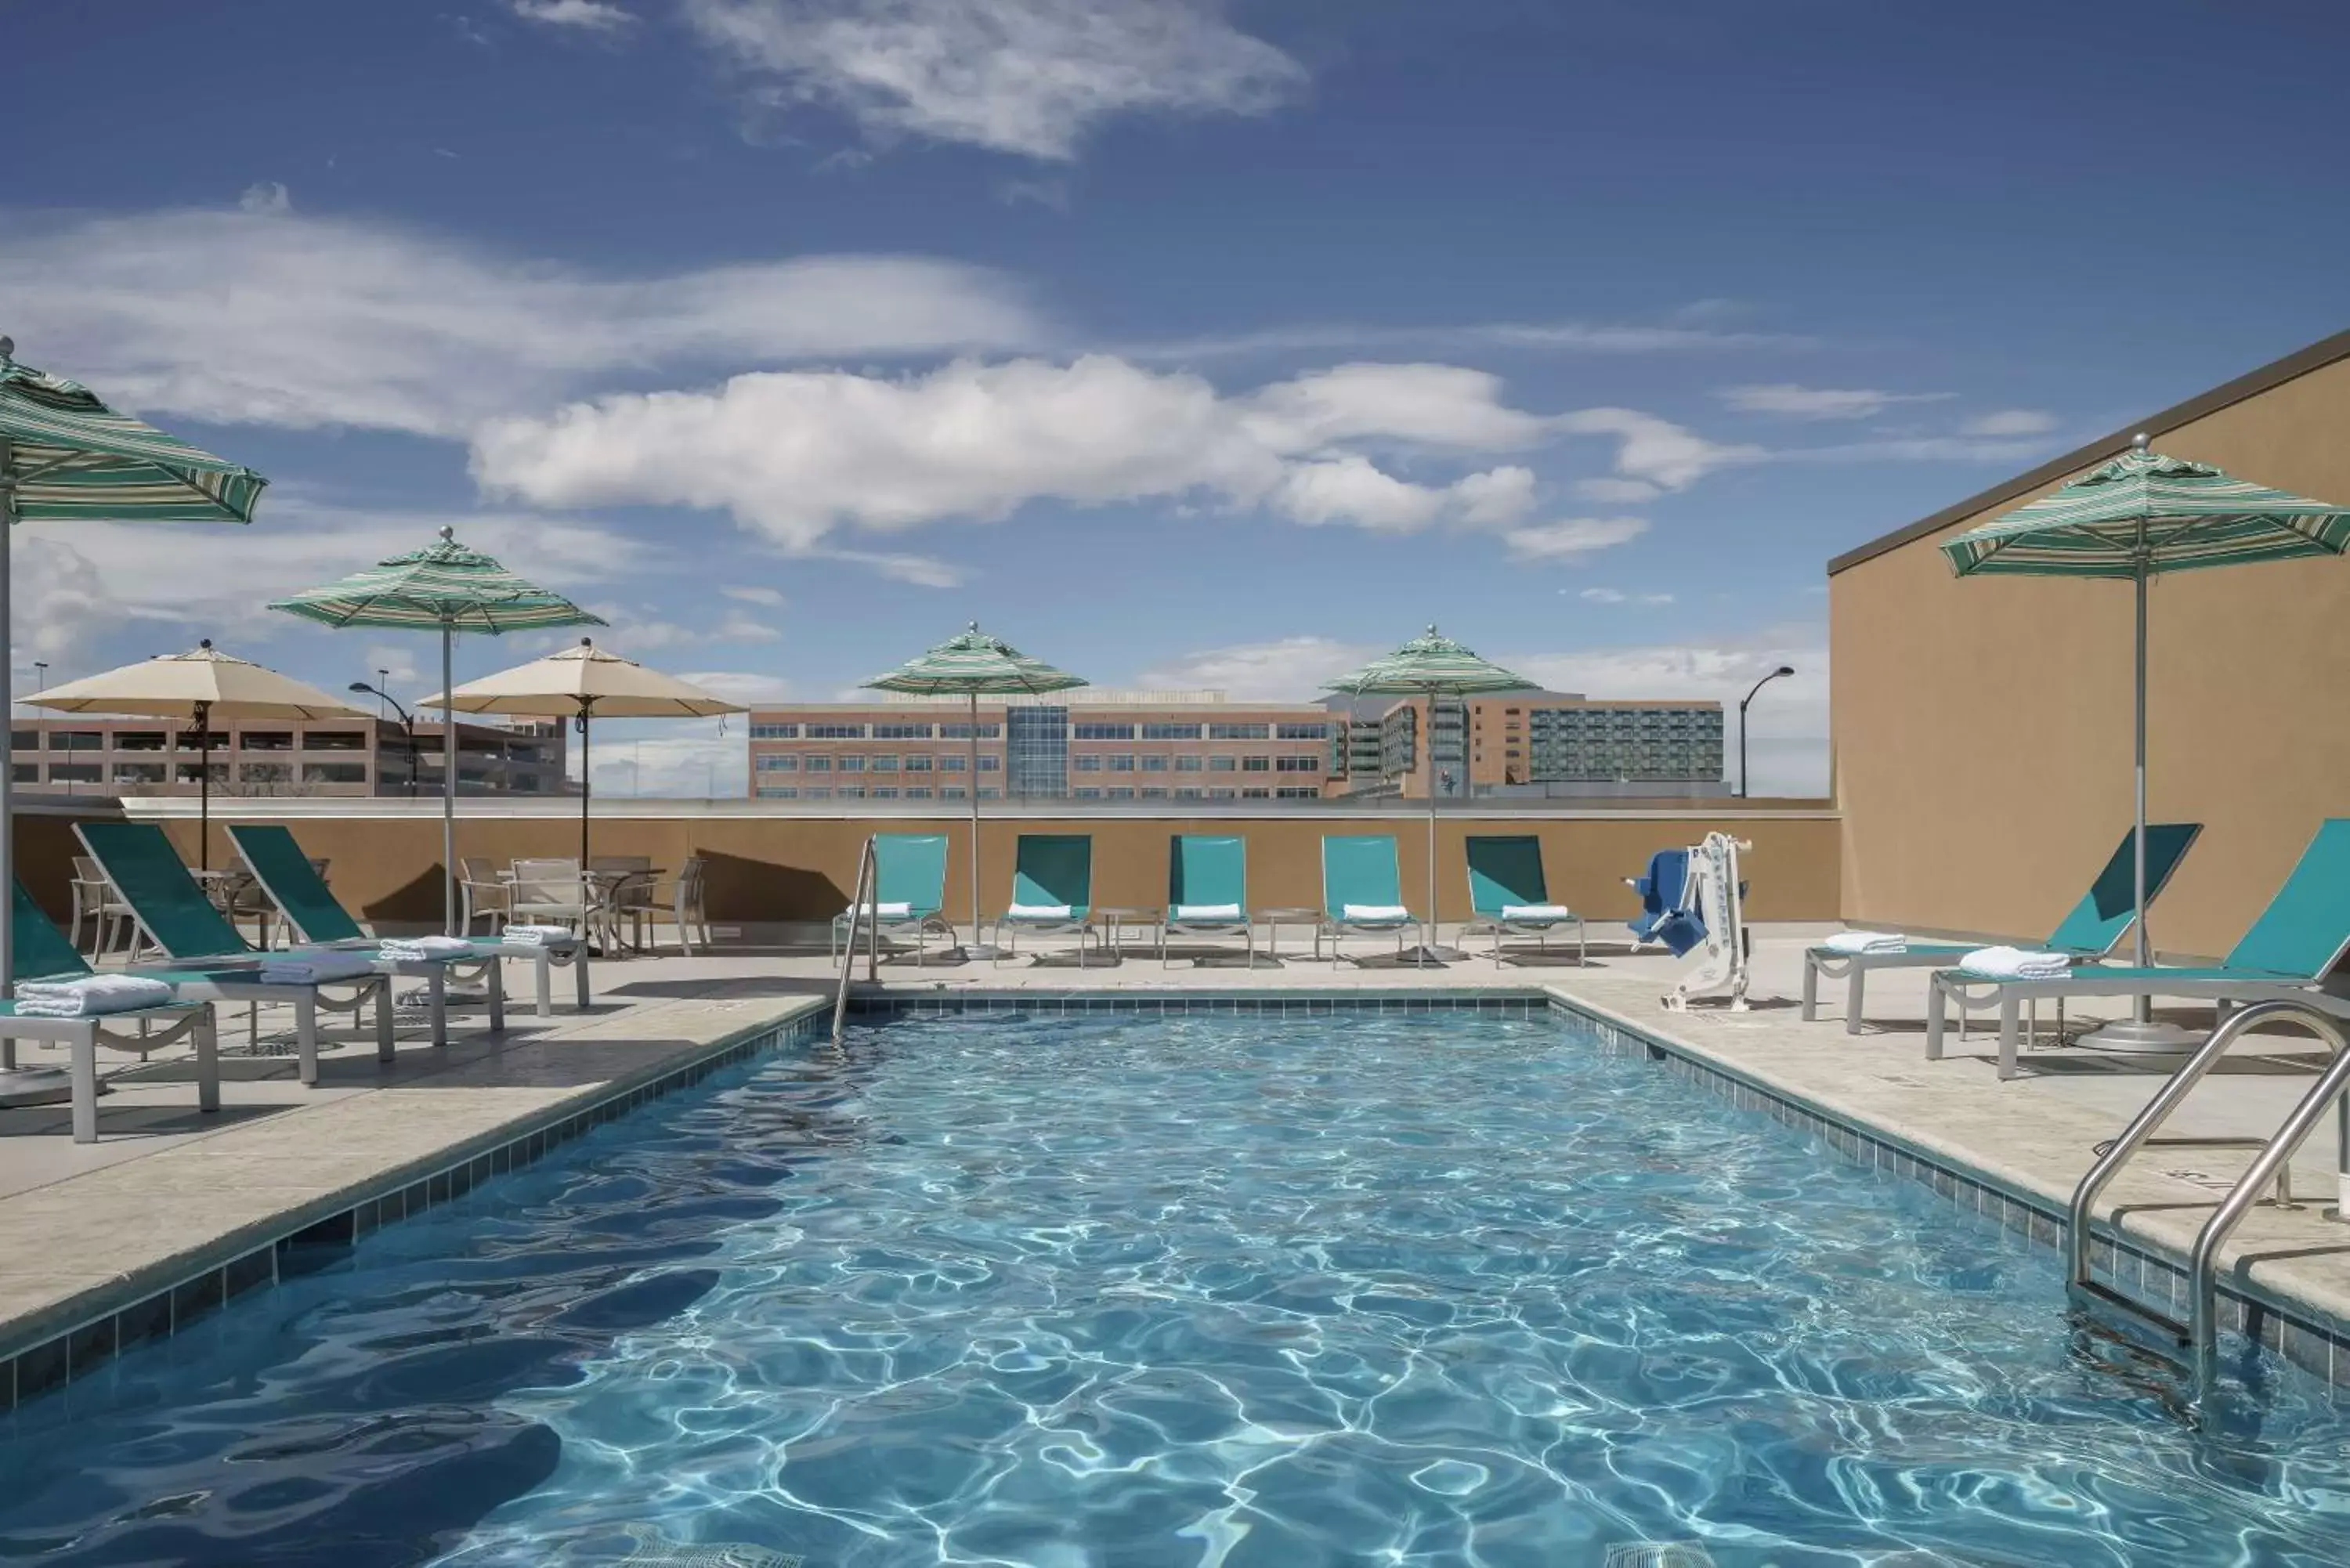 On site, Swimming Pool in Hyatt Regency Aurora-Denver Conference Center